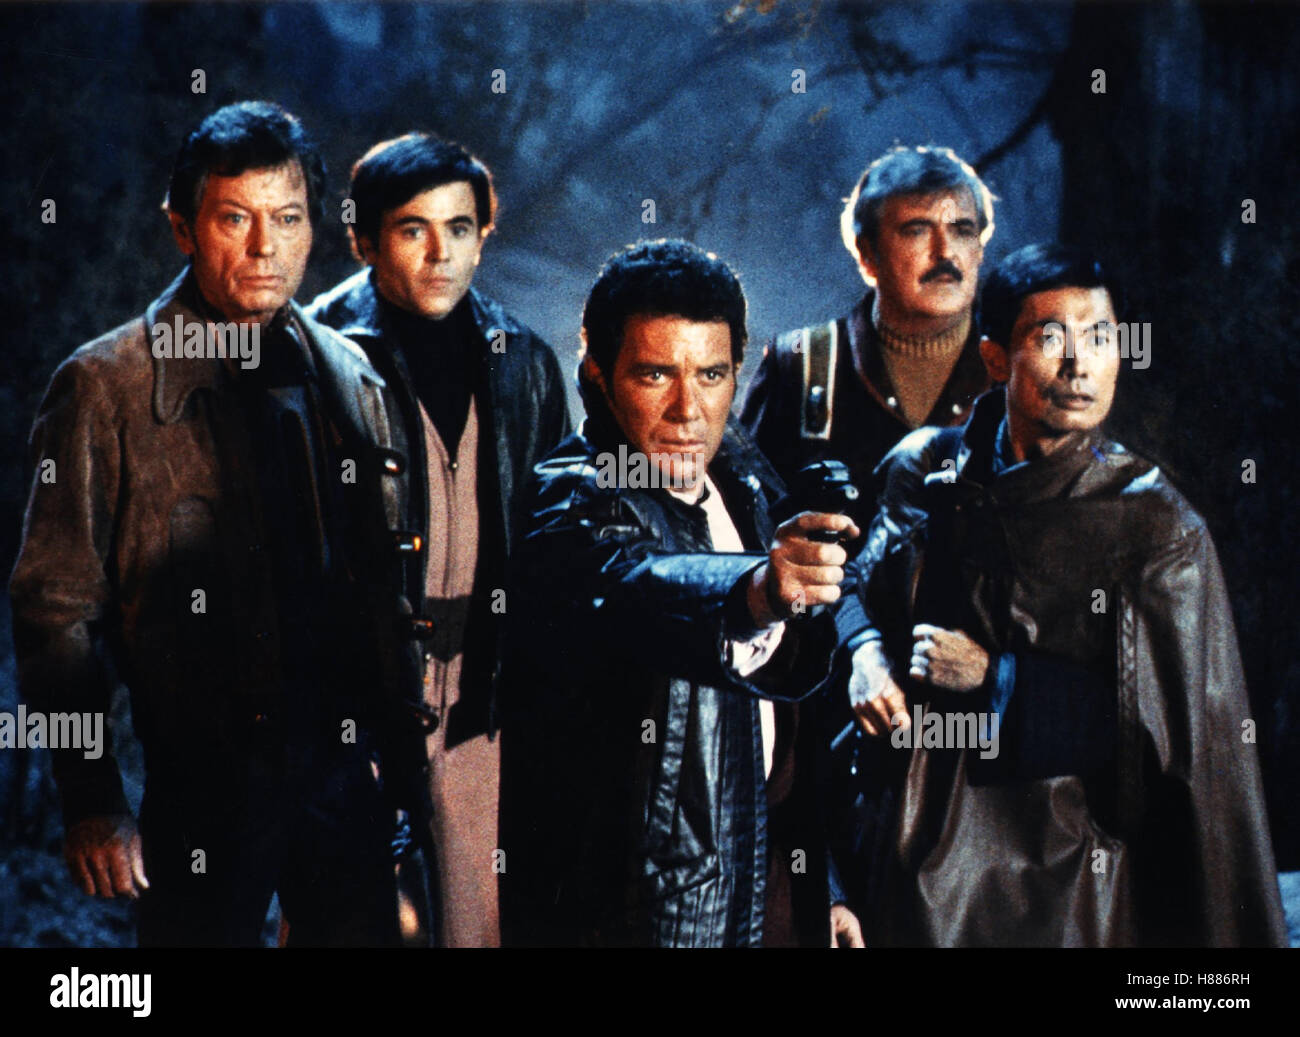 Star Trek III - Auf der Suche nach Mr. Spock, (STAR TREK III - THE SEARCH FOR SPOCK) USA 1983, Regie: Leonard Nimoy, DeFOREST KELLEY, WALTER KOENIG, WILLIAM SHATNER, JAMES DOOHAN, GEORGE TAKEI, Stichwort: Kirk, Pille, Scotty, Sulu, Chekov, Phaser Stock Photo